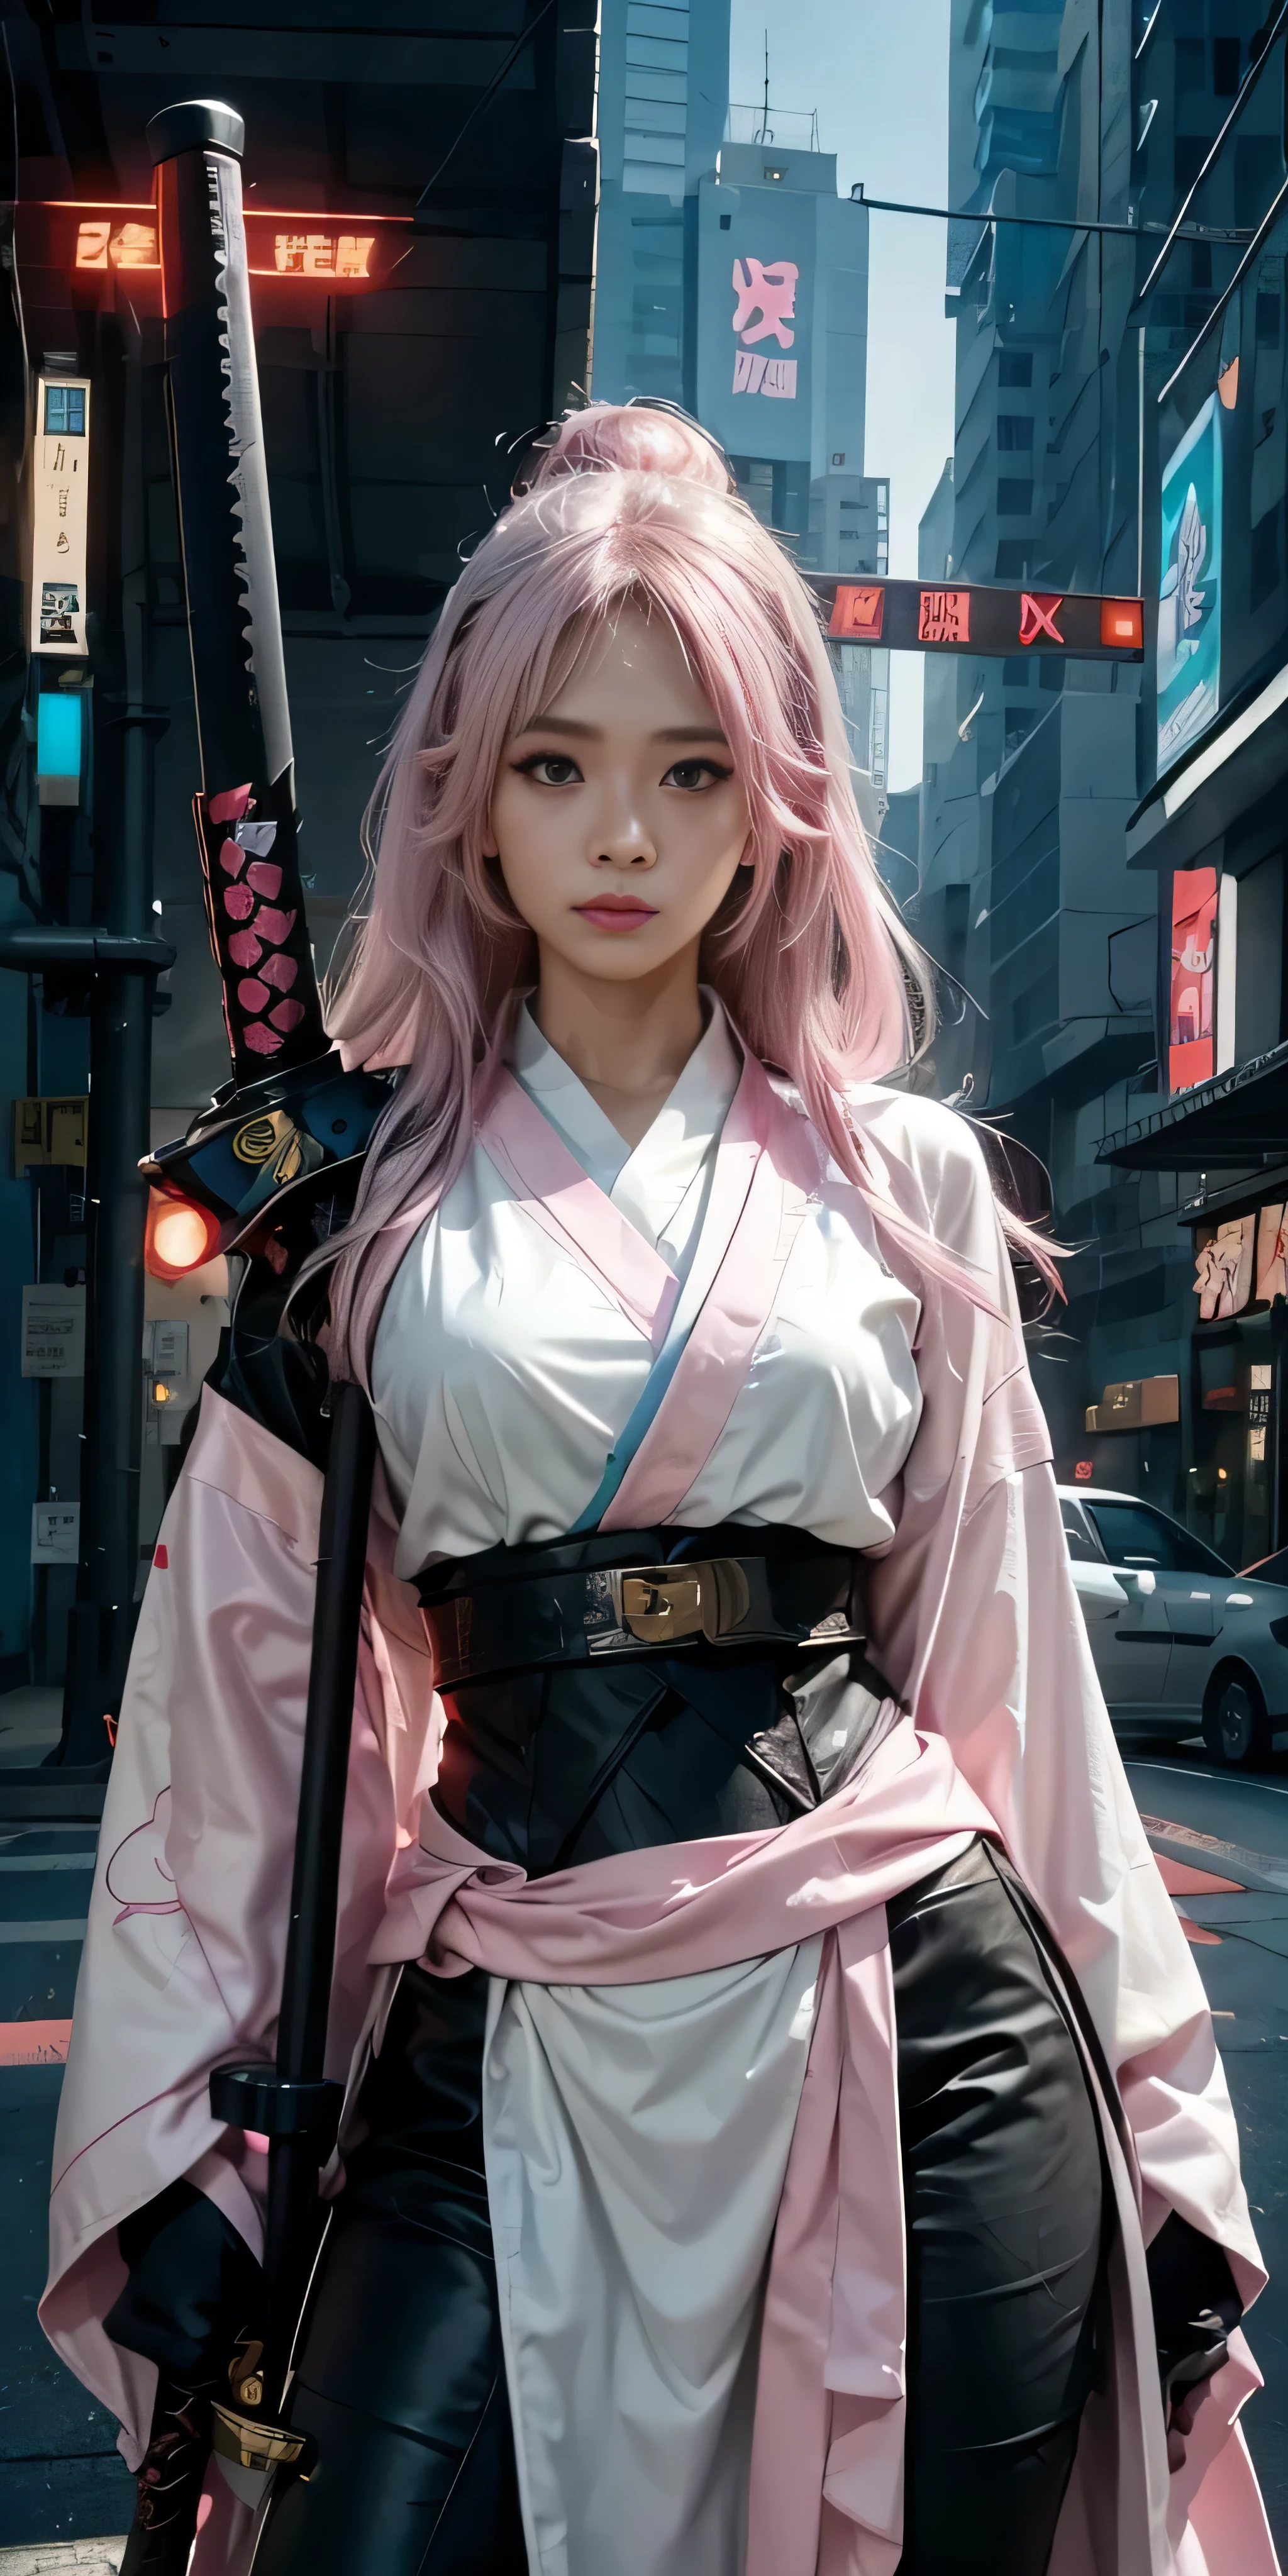 Arafed Frau in einem rosa Kimono mit einem Schwert in einer Stadt, sehr schöne Cyberpunk-Samurai, anime girl Cosplay-Kostüm, anime Cosplay-Kostüm, Anime-Stil mixed with fujifilm, haruno sakura, Anime inspiriert, Anime-Mädchen im wirklichen Leben, Anime-Stil. 8k, Cosplay-Kostüm, Anime-Stil 4 k, female cyberpunk anime girl, cyberpunk anime girl, japanische Techwear tragen